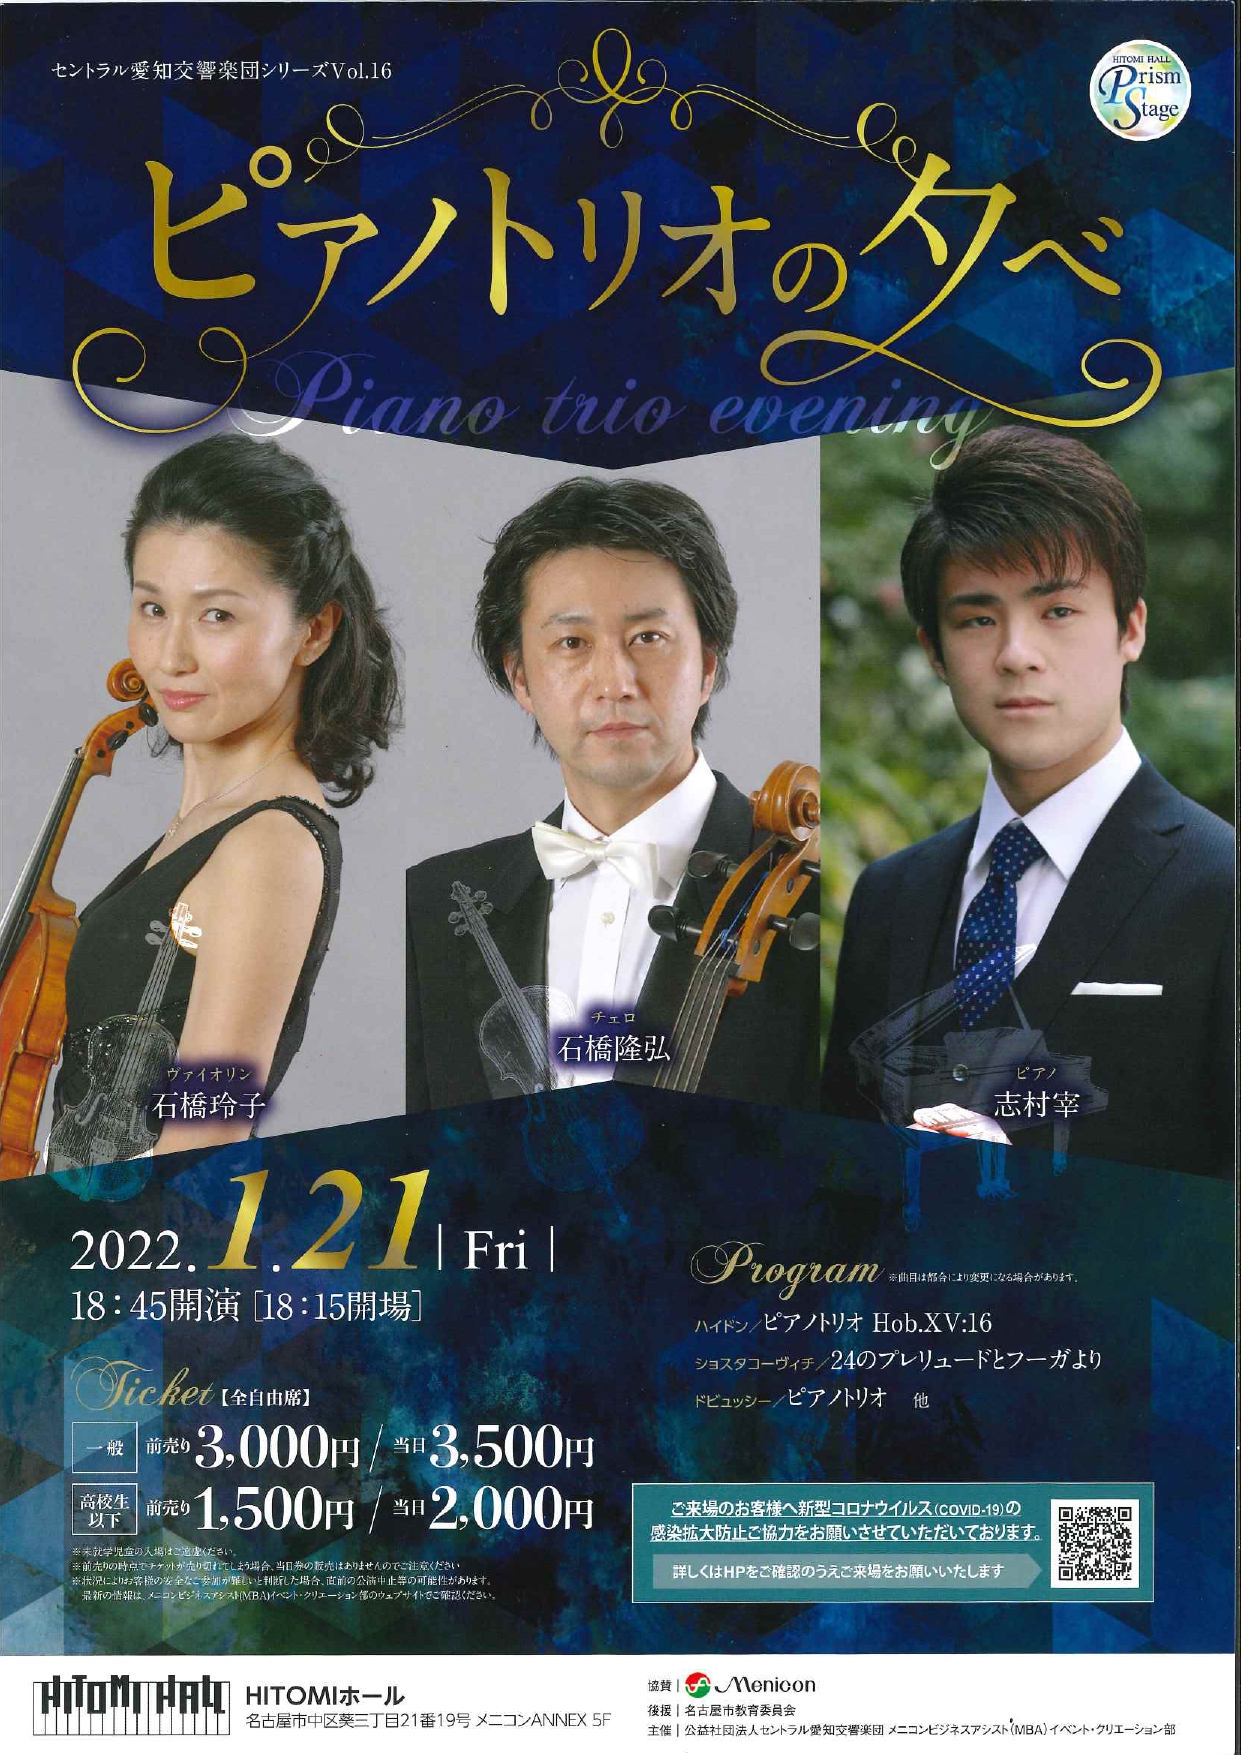 HITOMIホールプリズムステージ セントラル愛知交響楽団シリーズVol.16『ピアノトリオの夕べ』